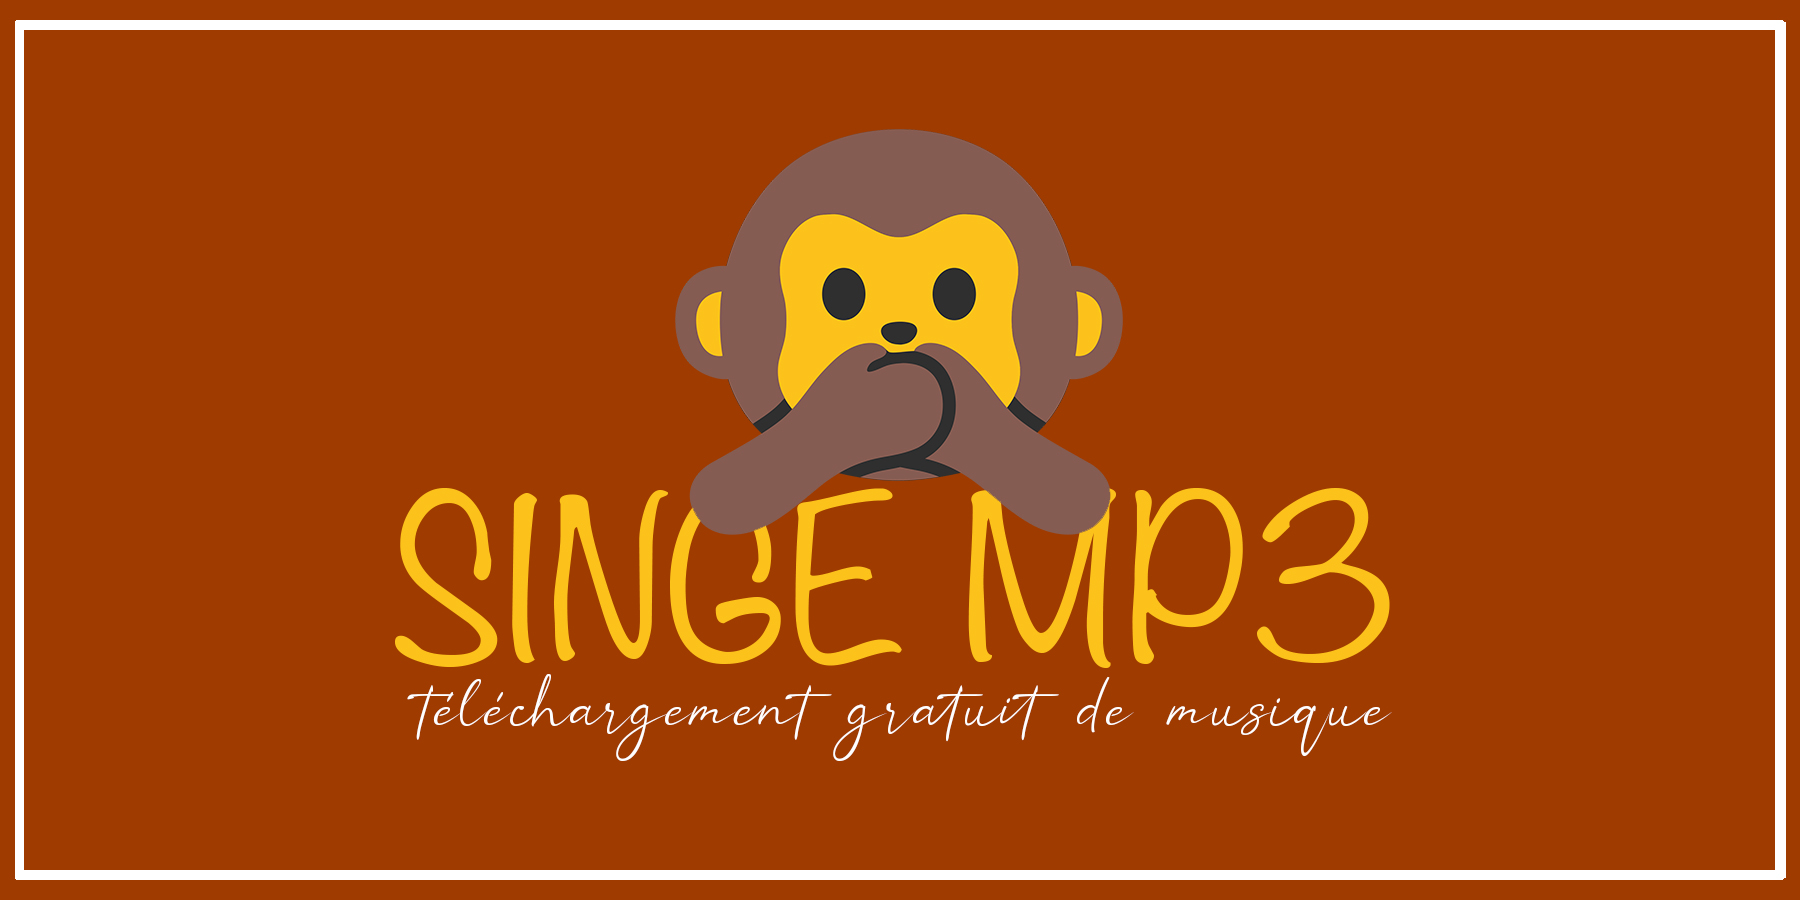 Monkey MP3: ახალი მისამართი MP3 მუსიკის უფასოდ ჩამოსატვირთად